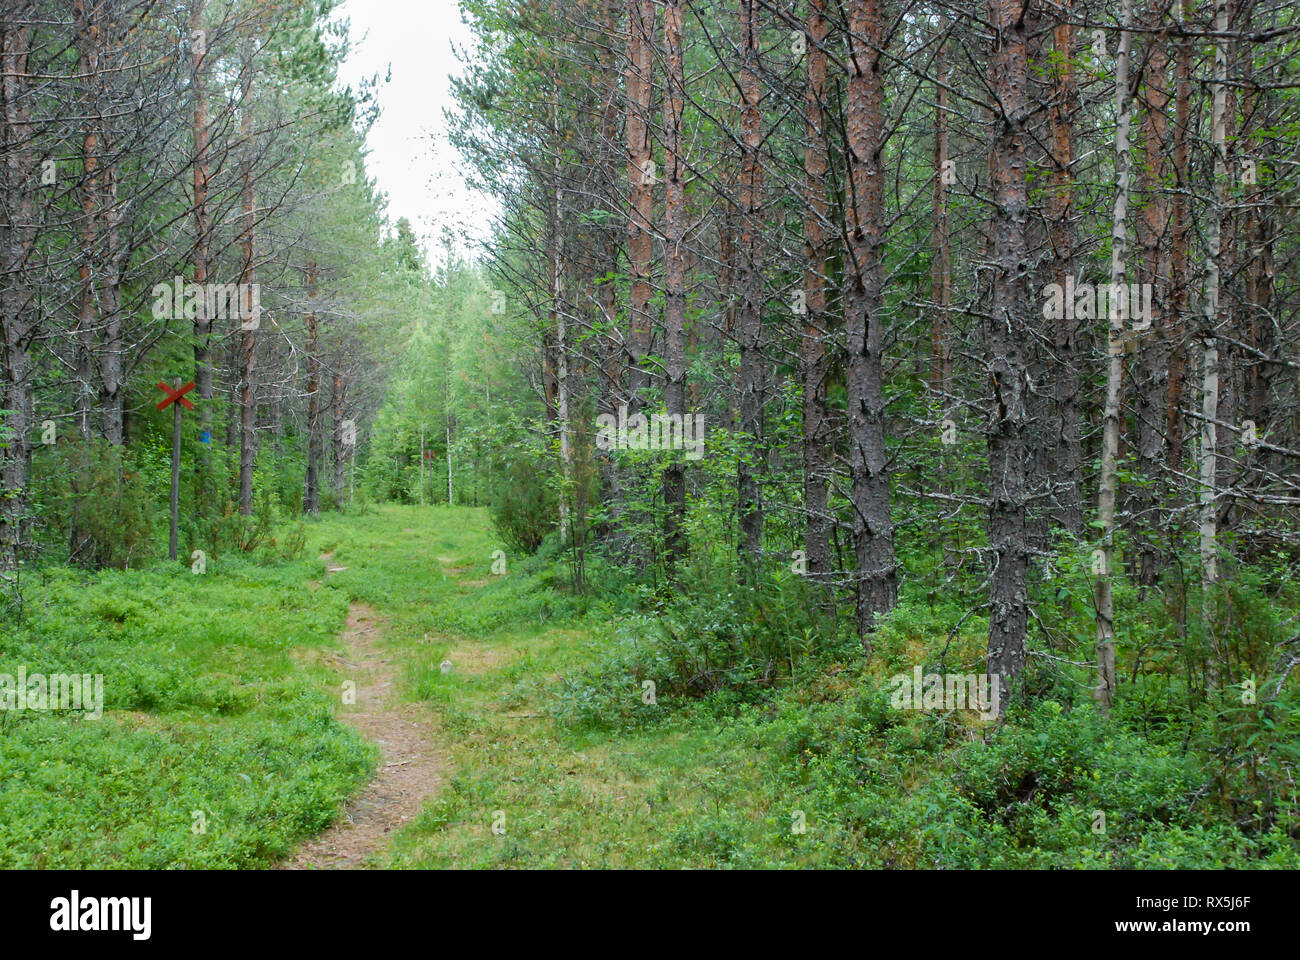 Bosques de taiga (bosque boreal) bioma, agreste paisaje natural en el norte de Finlandia oriental, Europa, con coníferas incluyendo pinos y abetos. Foto de stock